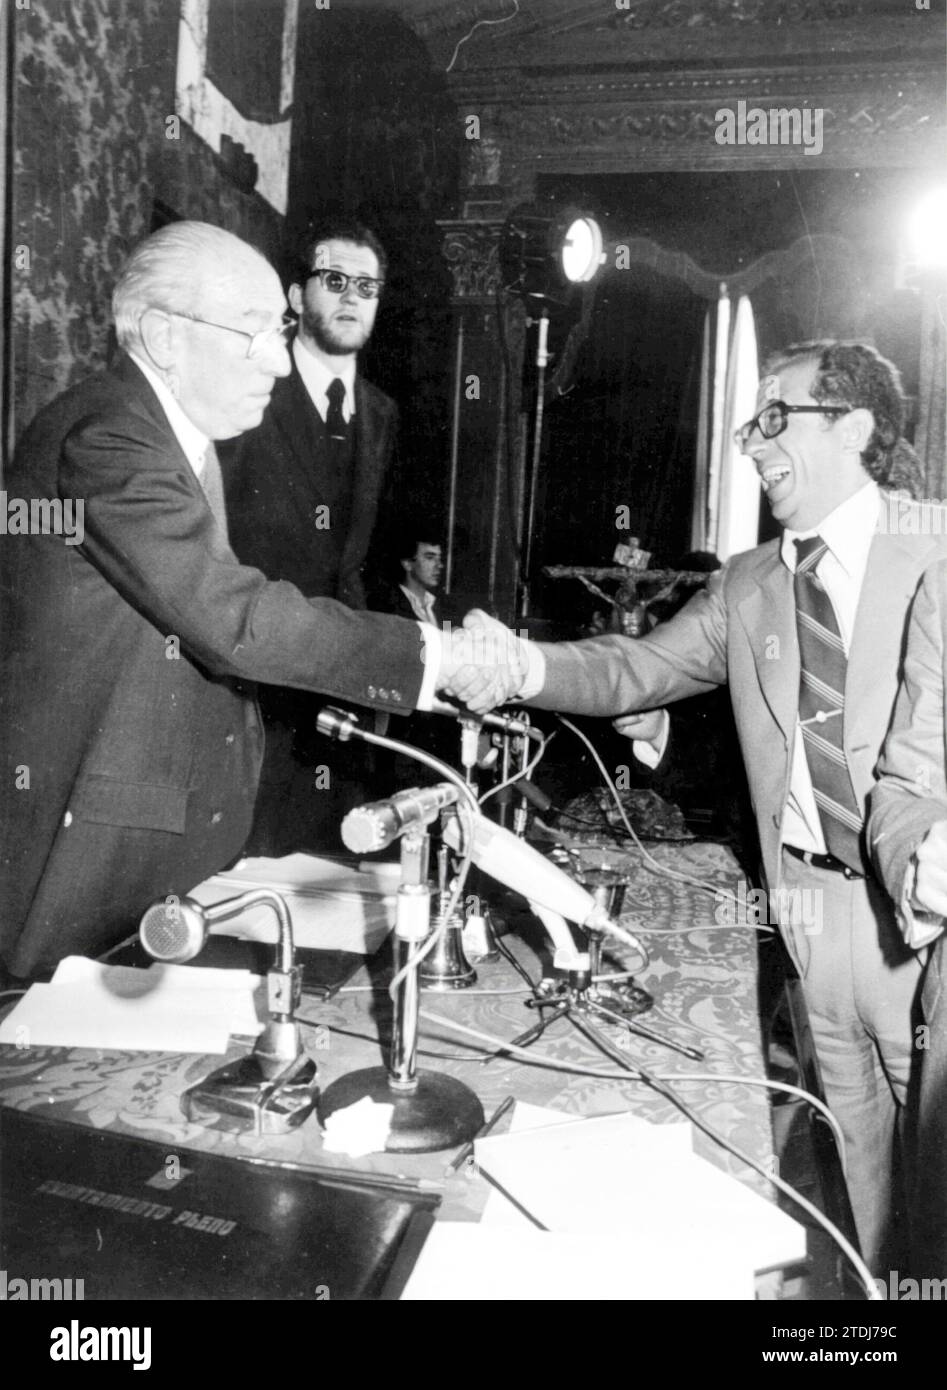 Madrid, 4/19/1979.- Enrique Tierno Galván viene accolto da José Luis Álvarez, dell'UCD, dopo essere stato investito come sindaco di Madrid. Crediti: Album / Archivo ABC / Teodoro Naranjo Domínguez Foto Stock